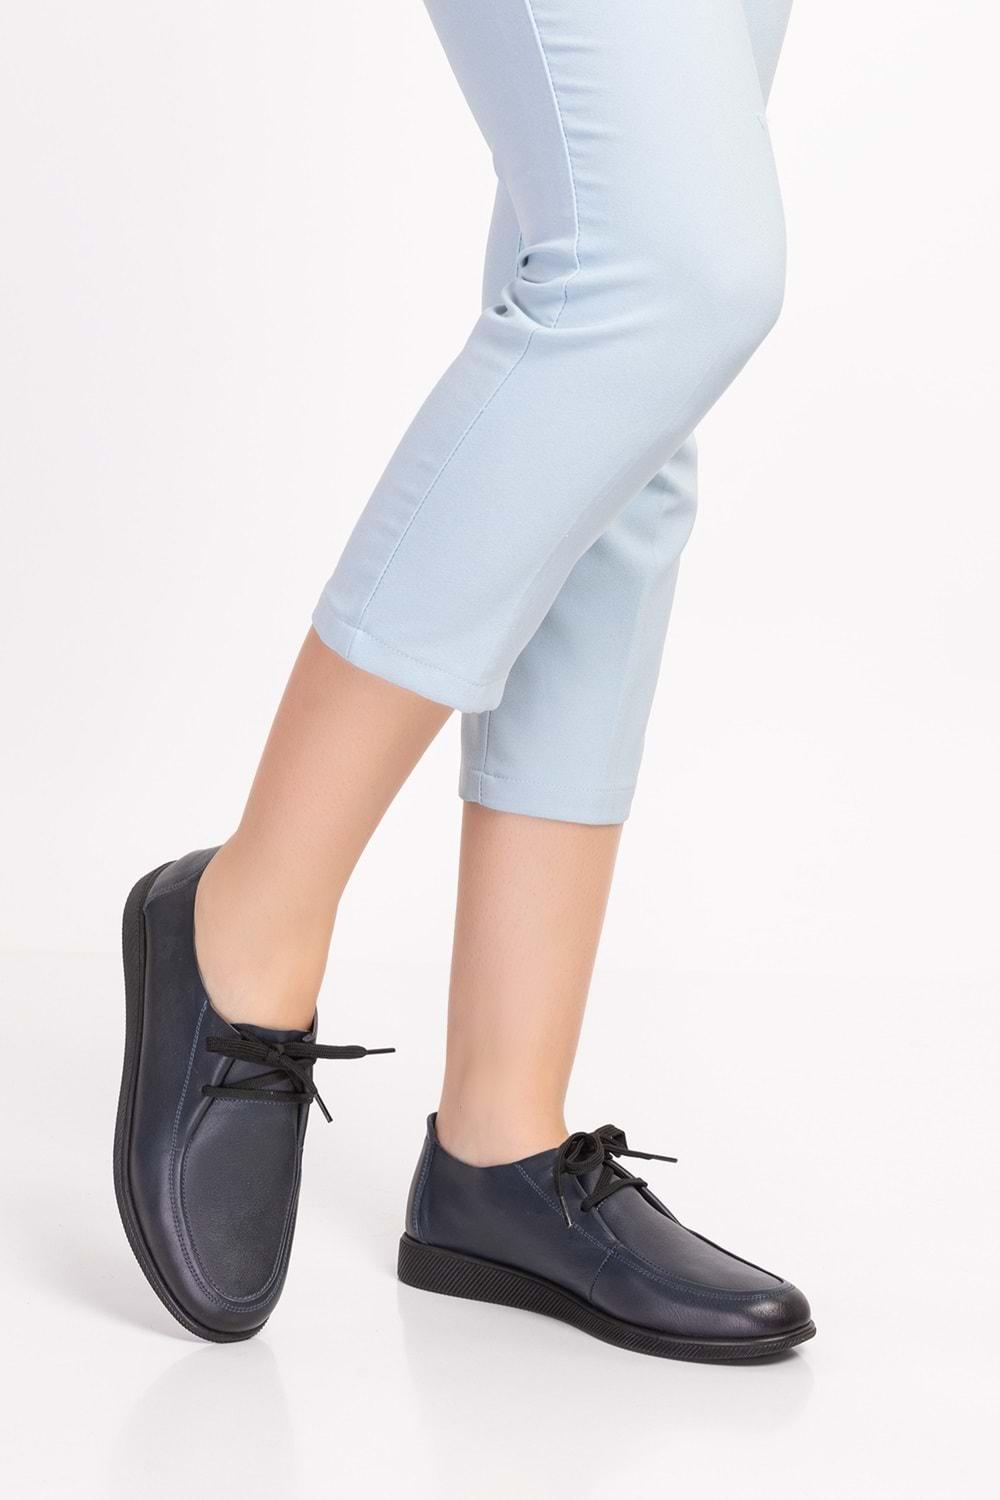 Gondol Hakiki Deri Klasik Loafer Ayakkabı izx.100 - Lacivert - 36